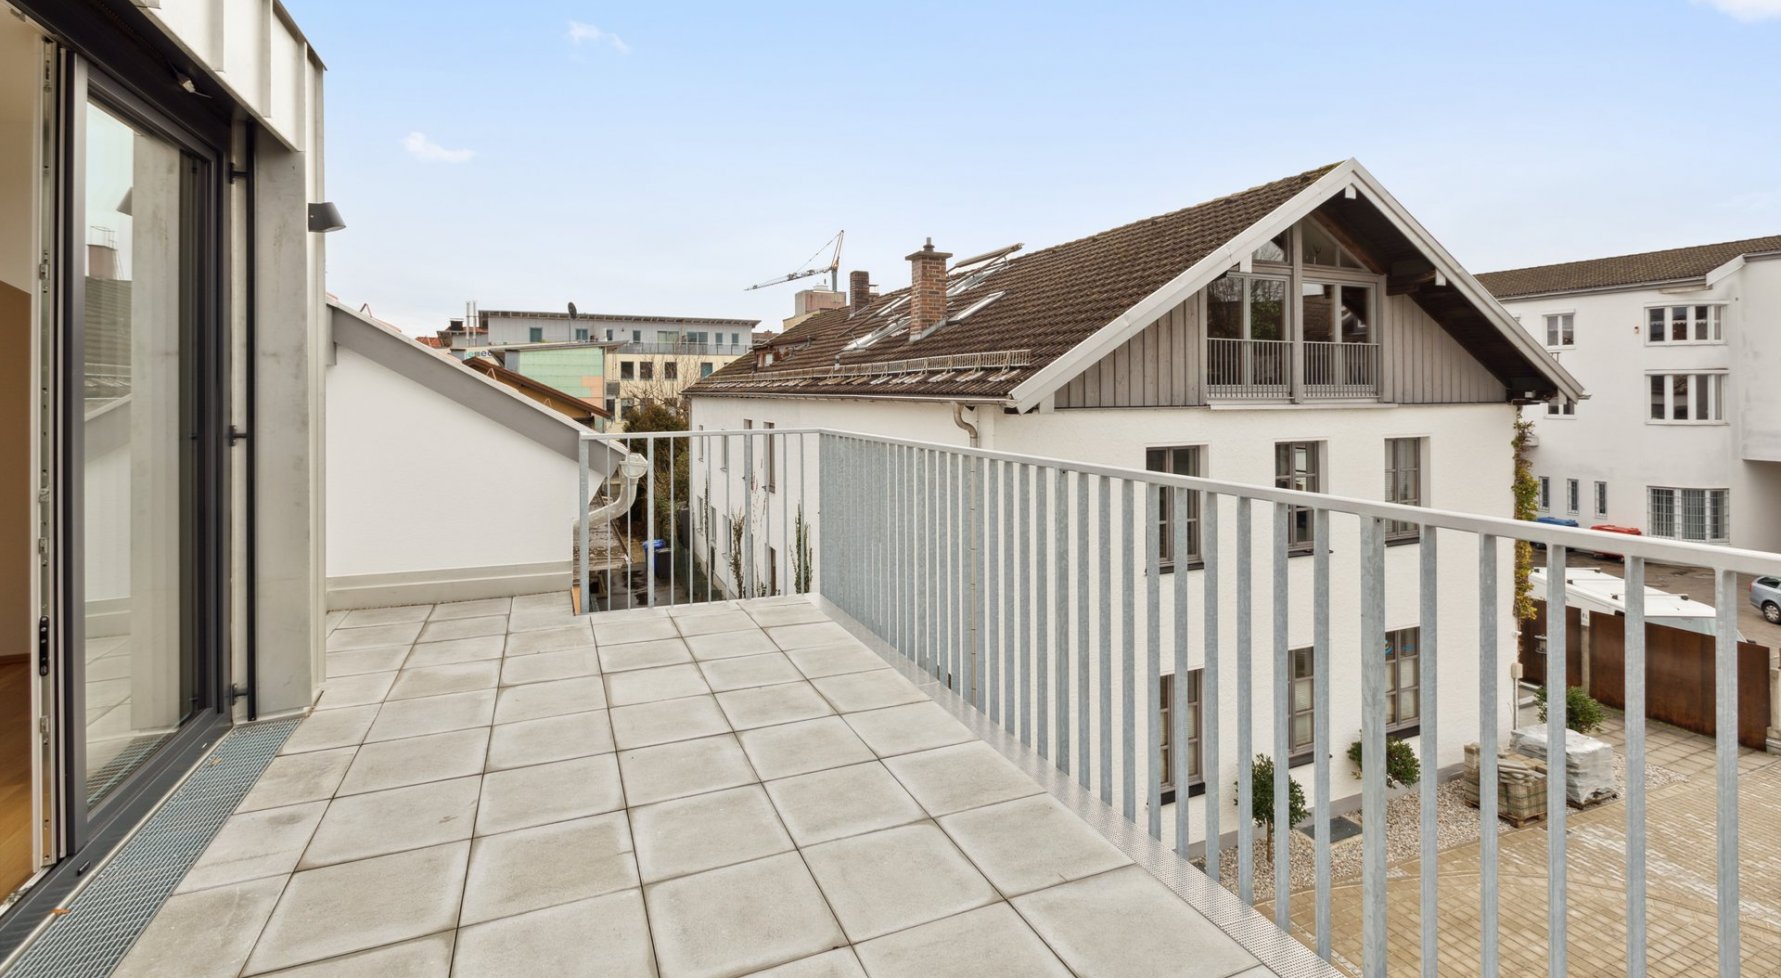 Property in 83395 Freilassing, Bayern: Stylisch moderne Dachgeschoßwohnung - für alle die das Besondere suchen! - picture 1